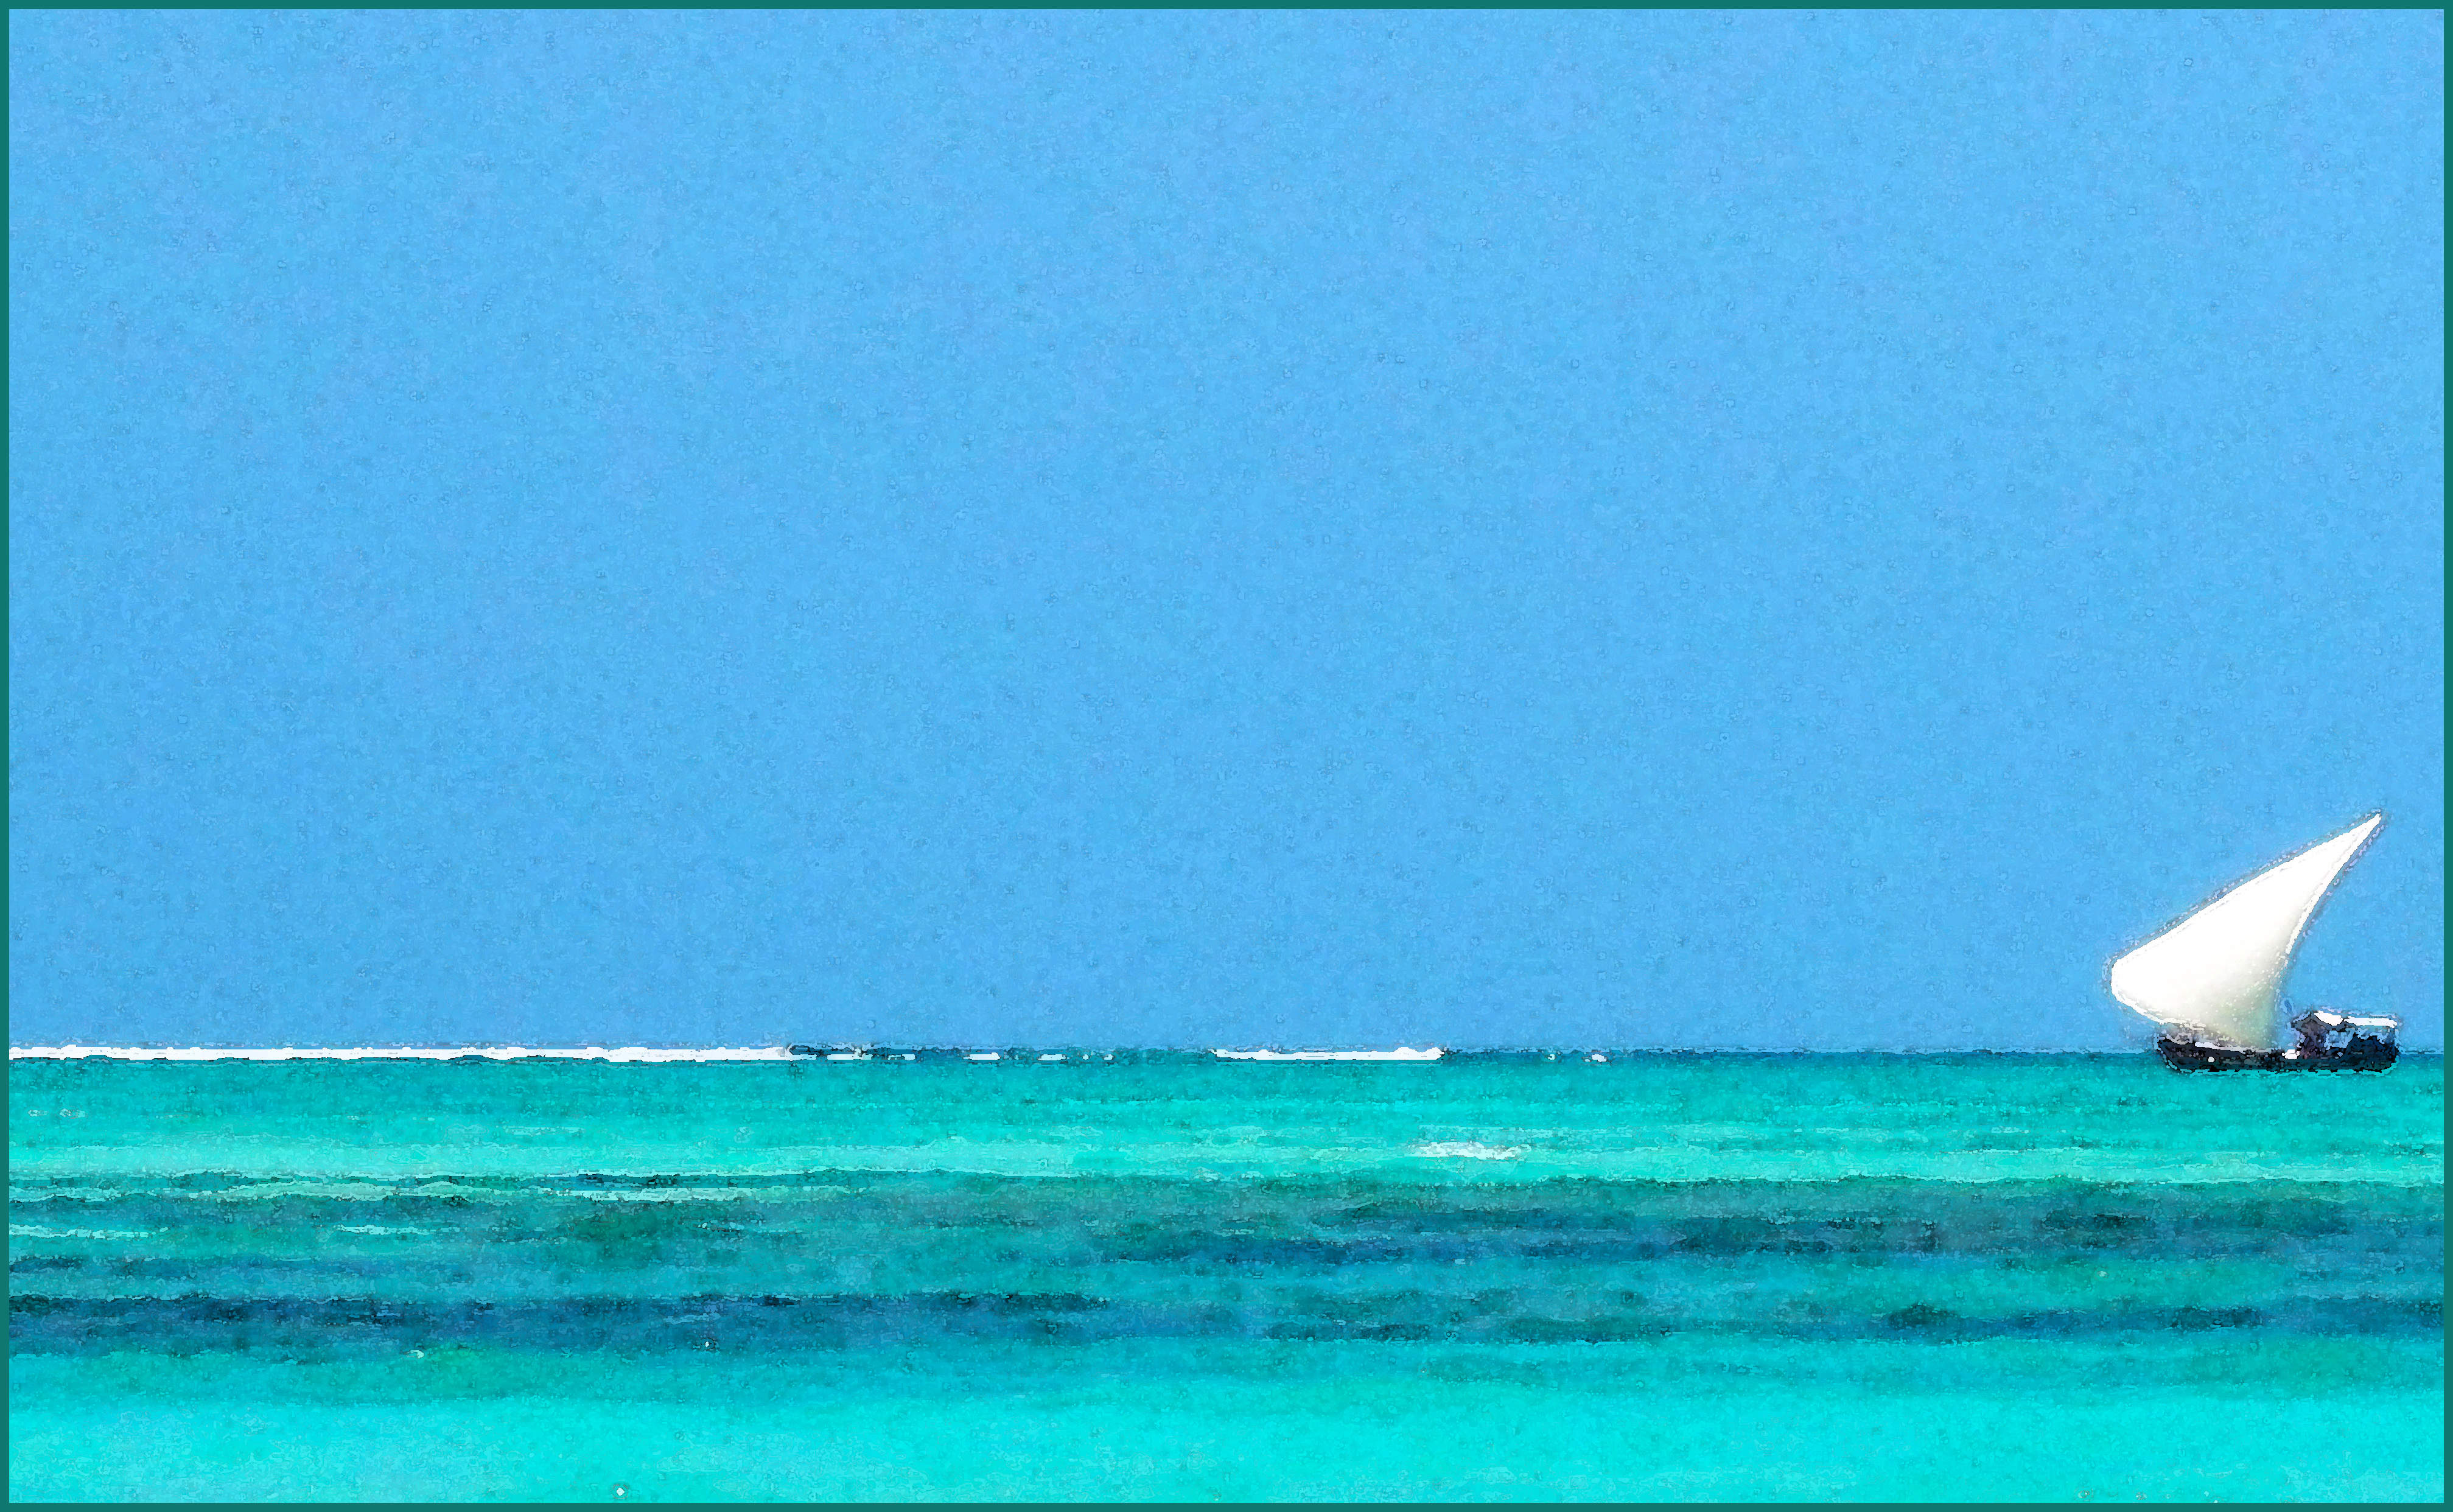 A sailboat off Zanzibar